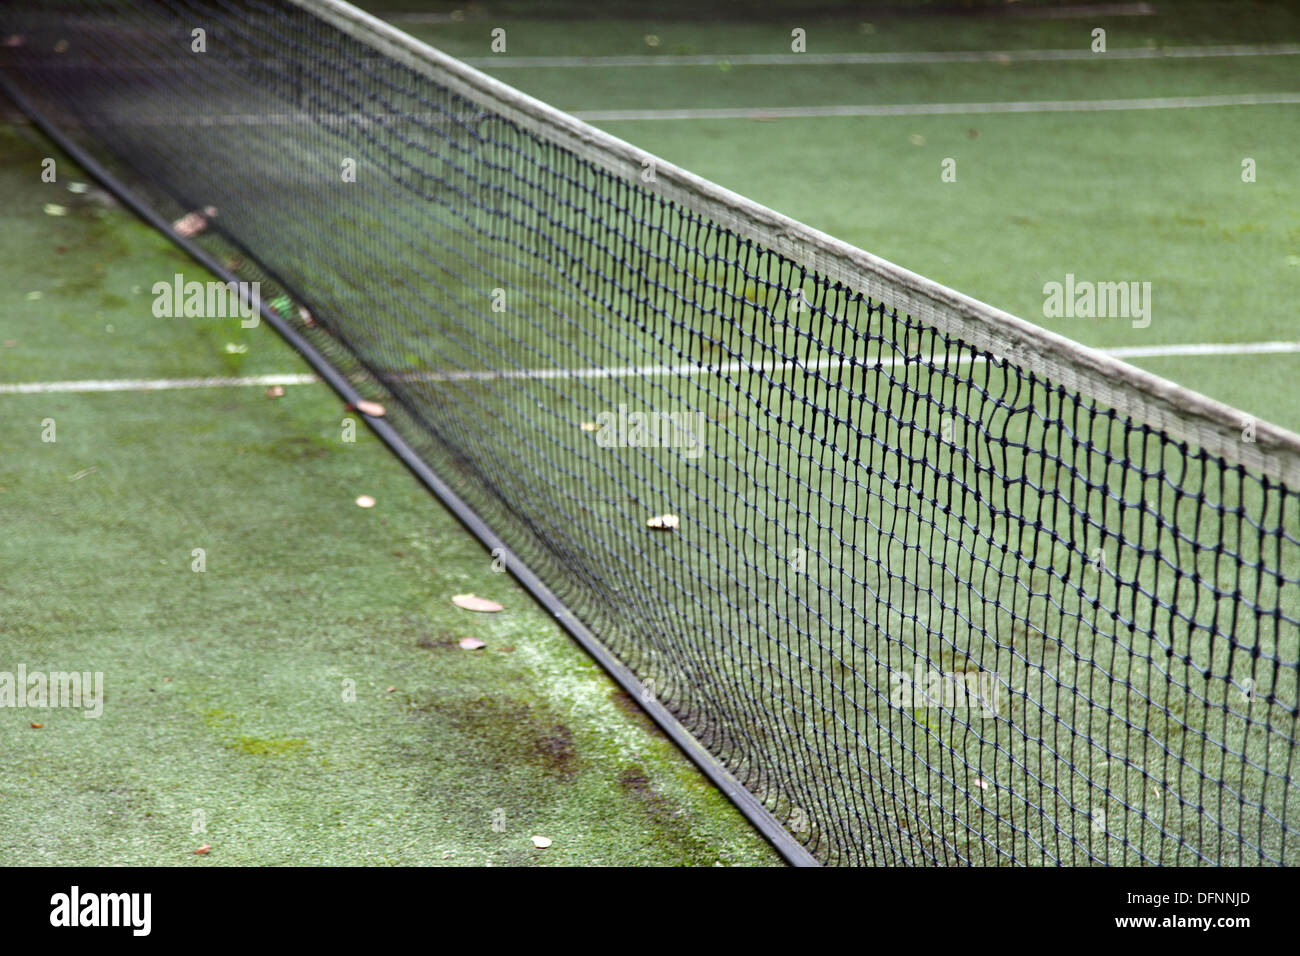 Si tratta di una foto di un dettaglio di un campo da tennis d'erba. Siamo in grado di vedere le linee bianche, la net. È abbastanza ruvida e sporca. Foto Stock